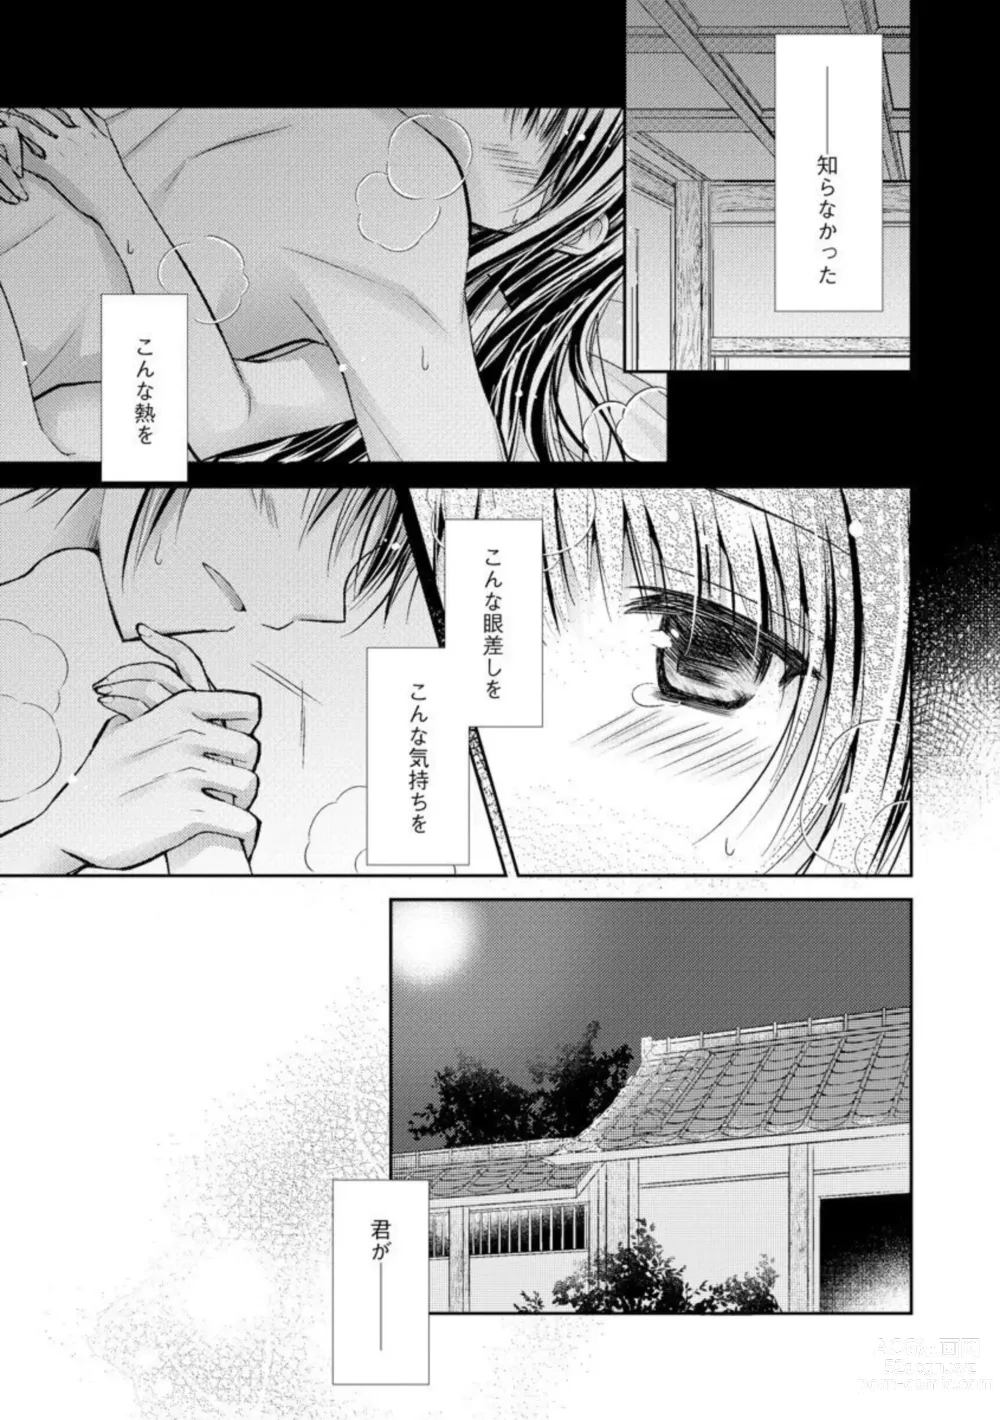 Page 3 of manga Aishin Retoroshizumu 1